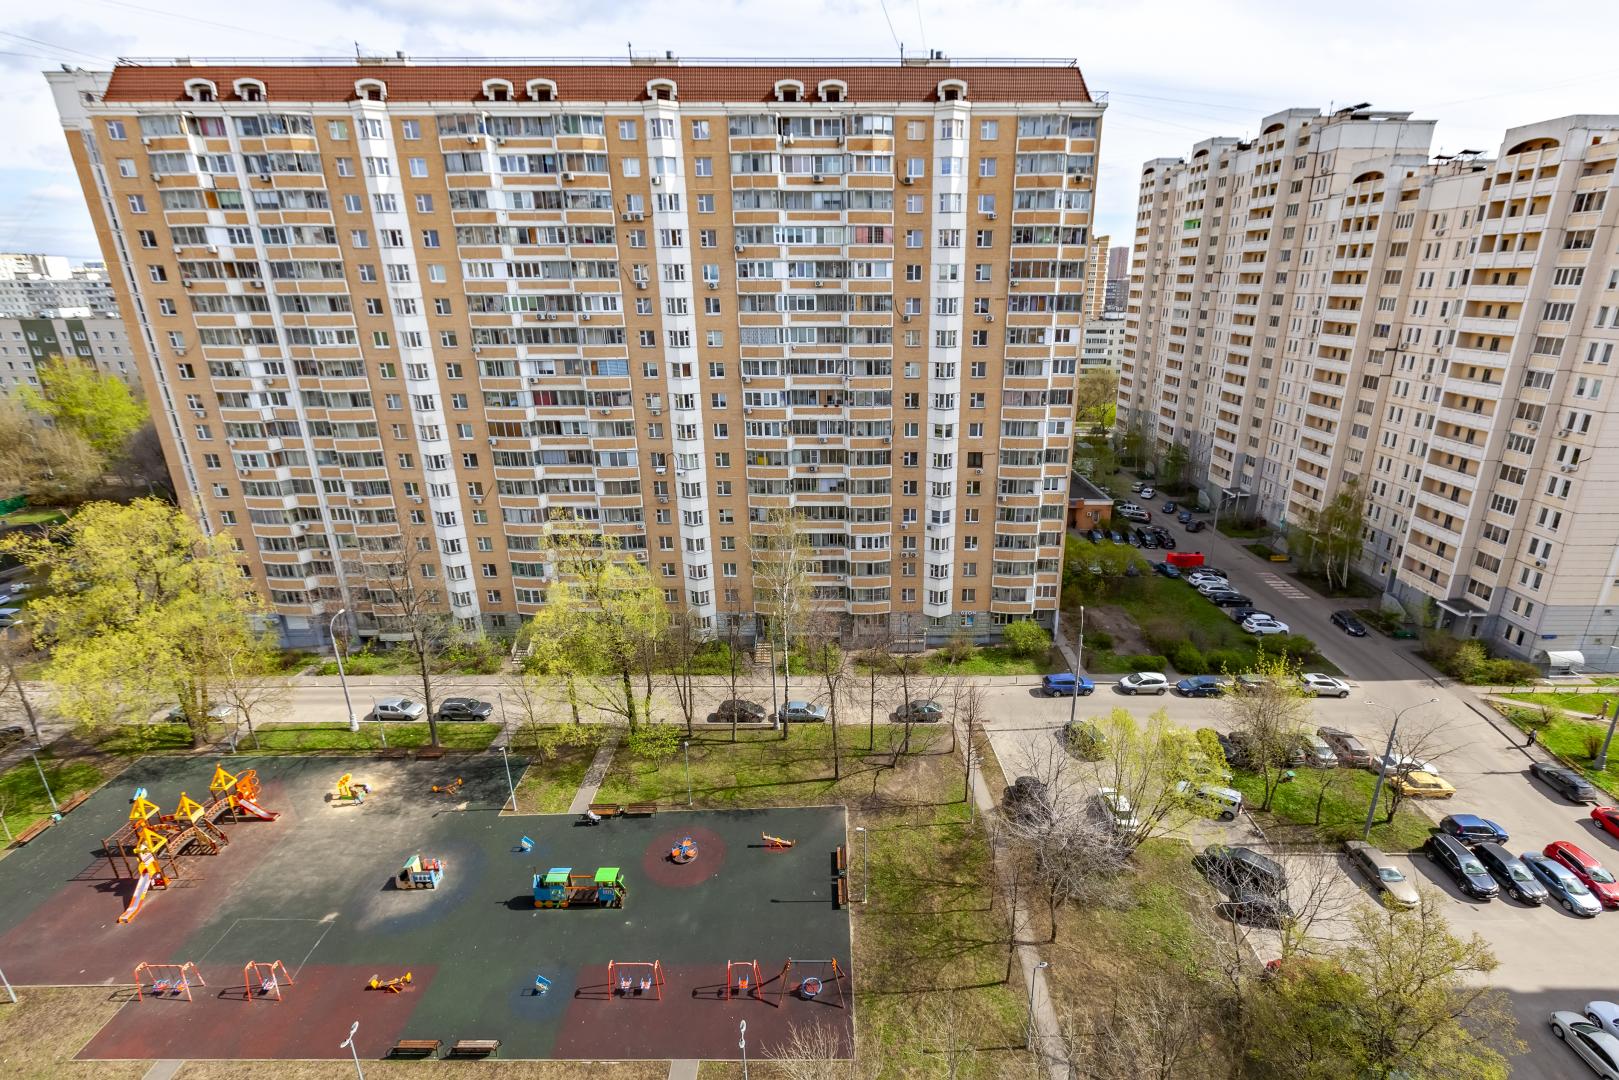 Продам квартиру в Москве по адресу Бескудниковский бульвар, 32к6, площадь 782 квм Недвижимость Москва (Россия)   Квартира в собственности более 15 лет, имеет одного собственника, свободная продажа